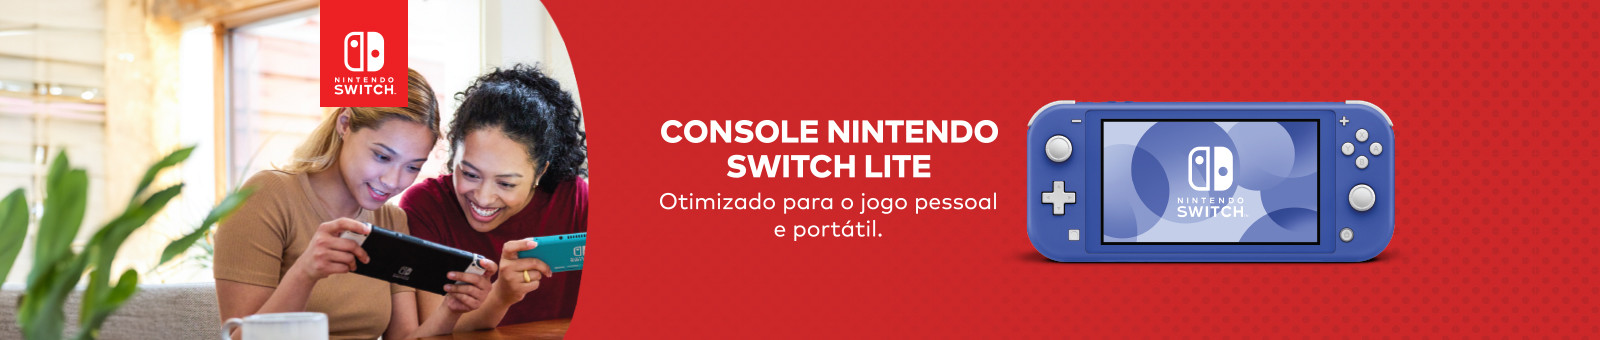 Console Nintendo Switch Lite. Otimizado para o jogo pessoal e portátil.